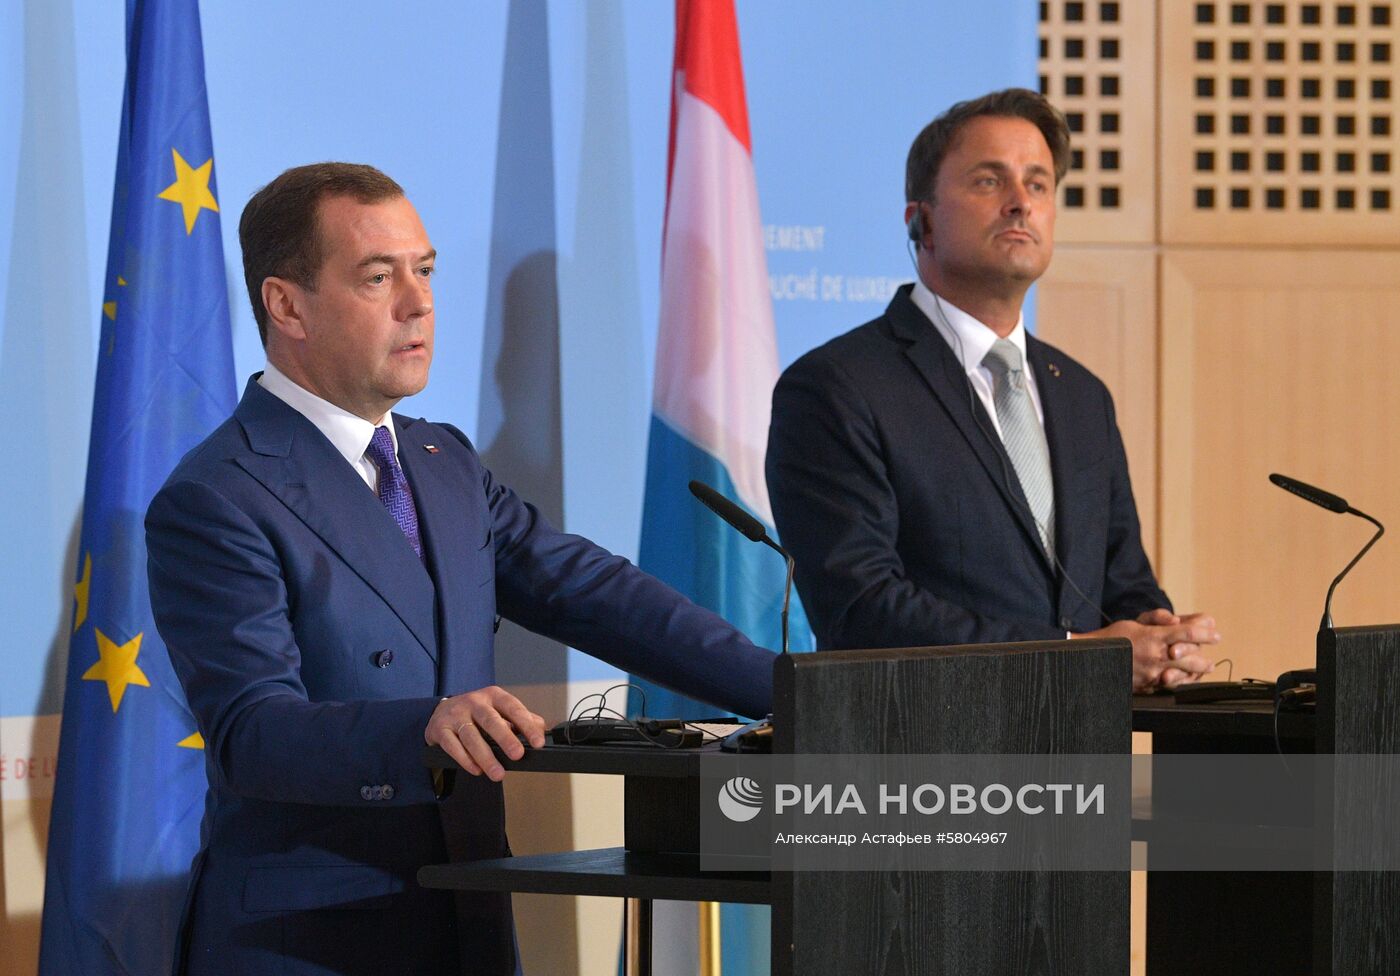 Официальный визит премьер-министра РФ Д. Медведева в Великое Герцогство Люксембург. День второй